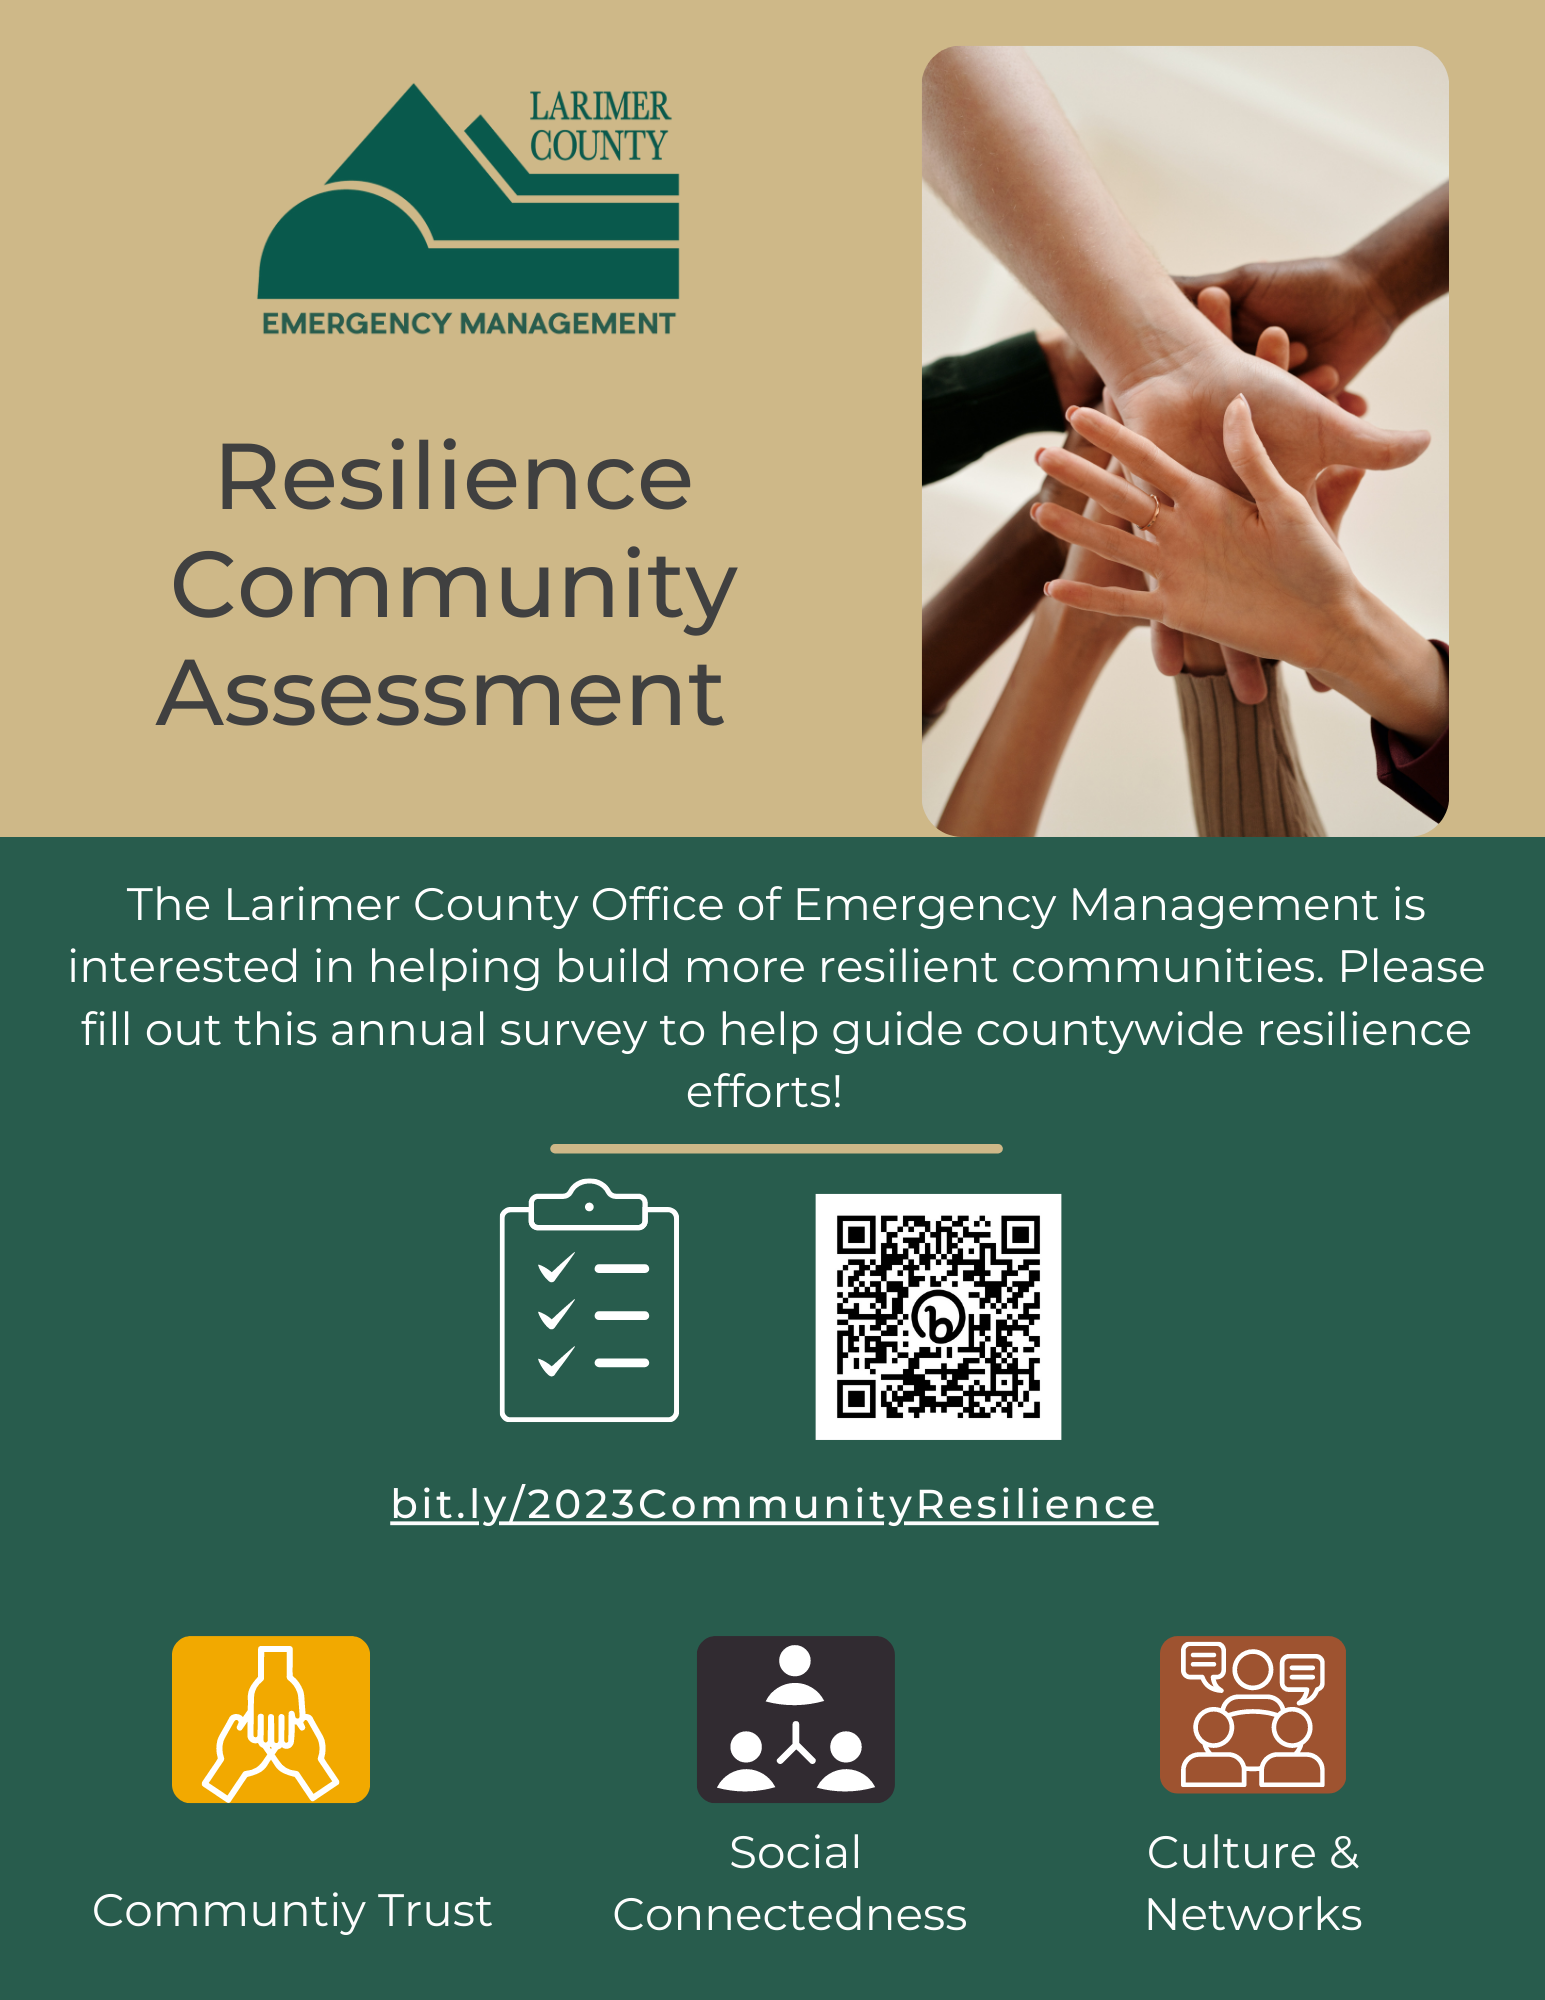 Bild 1: Bewertung der Widerstandsfähigkeit der Gemeinschaft durch das Larimer County Office of Emergency Management